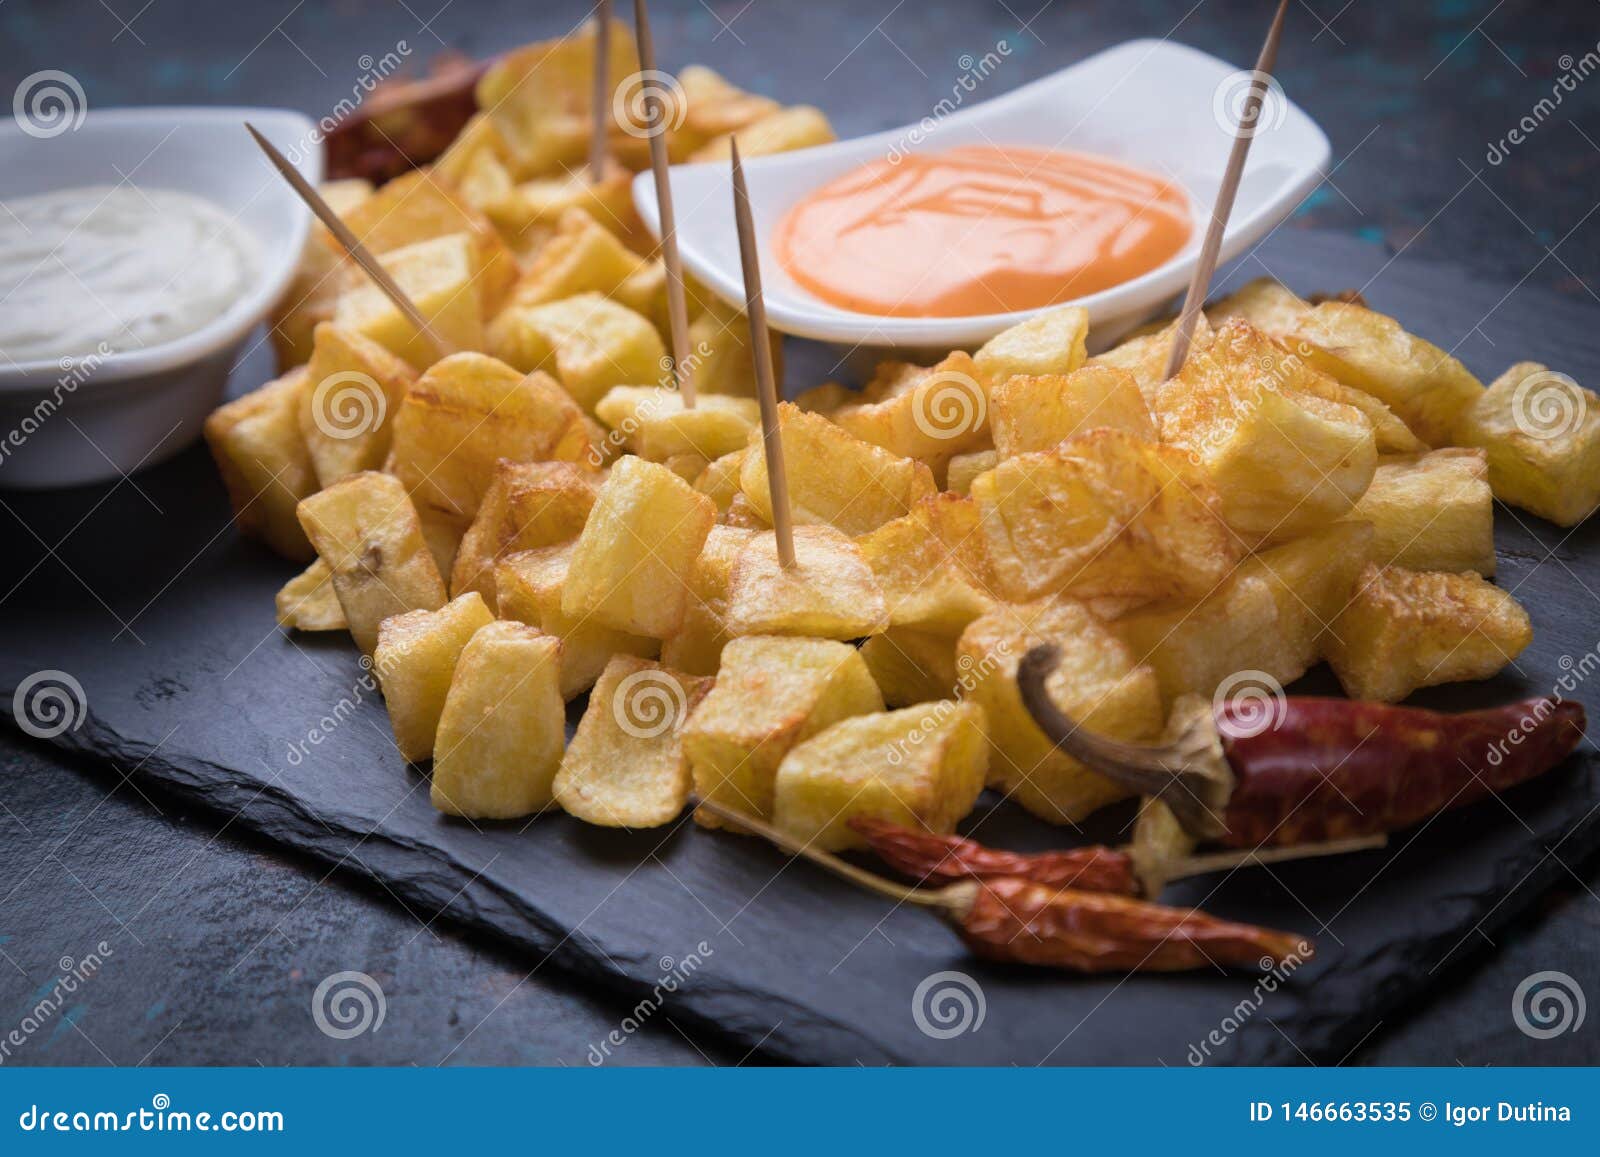 patatas bravas, spanish fried potato